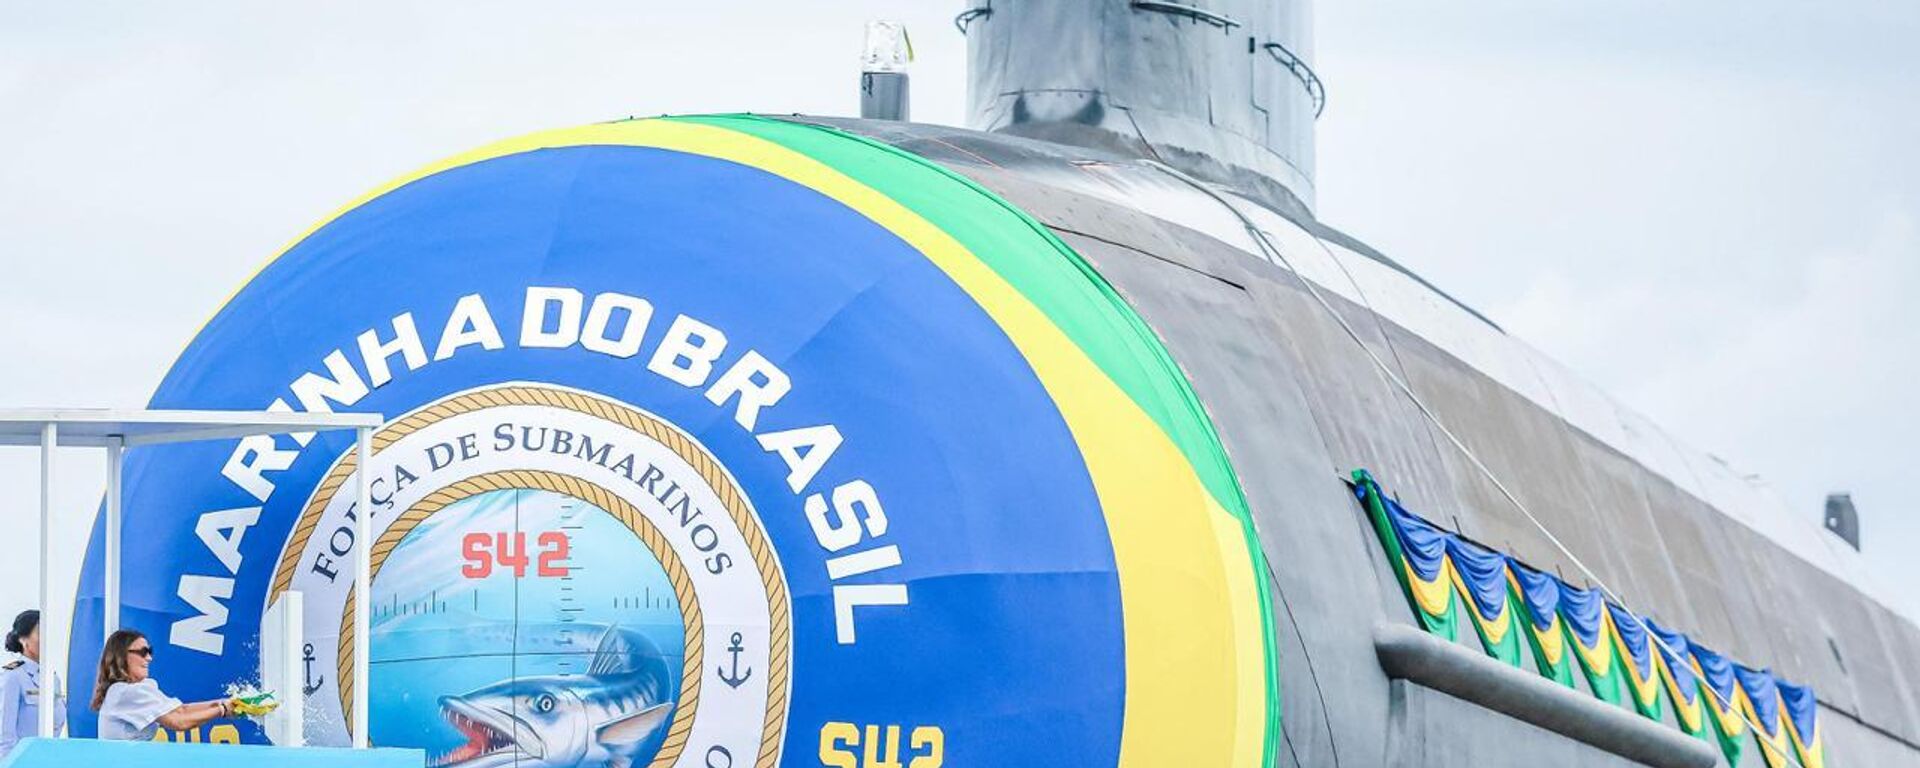 Submarino Tonelero (S42) é batizado pela primeira-dama, Janja da Silva, em 27 de março de 2024 - Sputnik Brasil, 1920, 27.03.2024